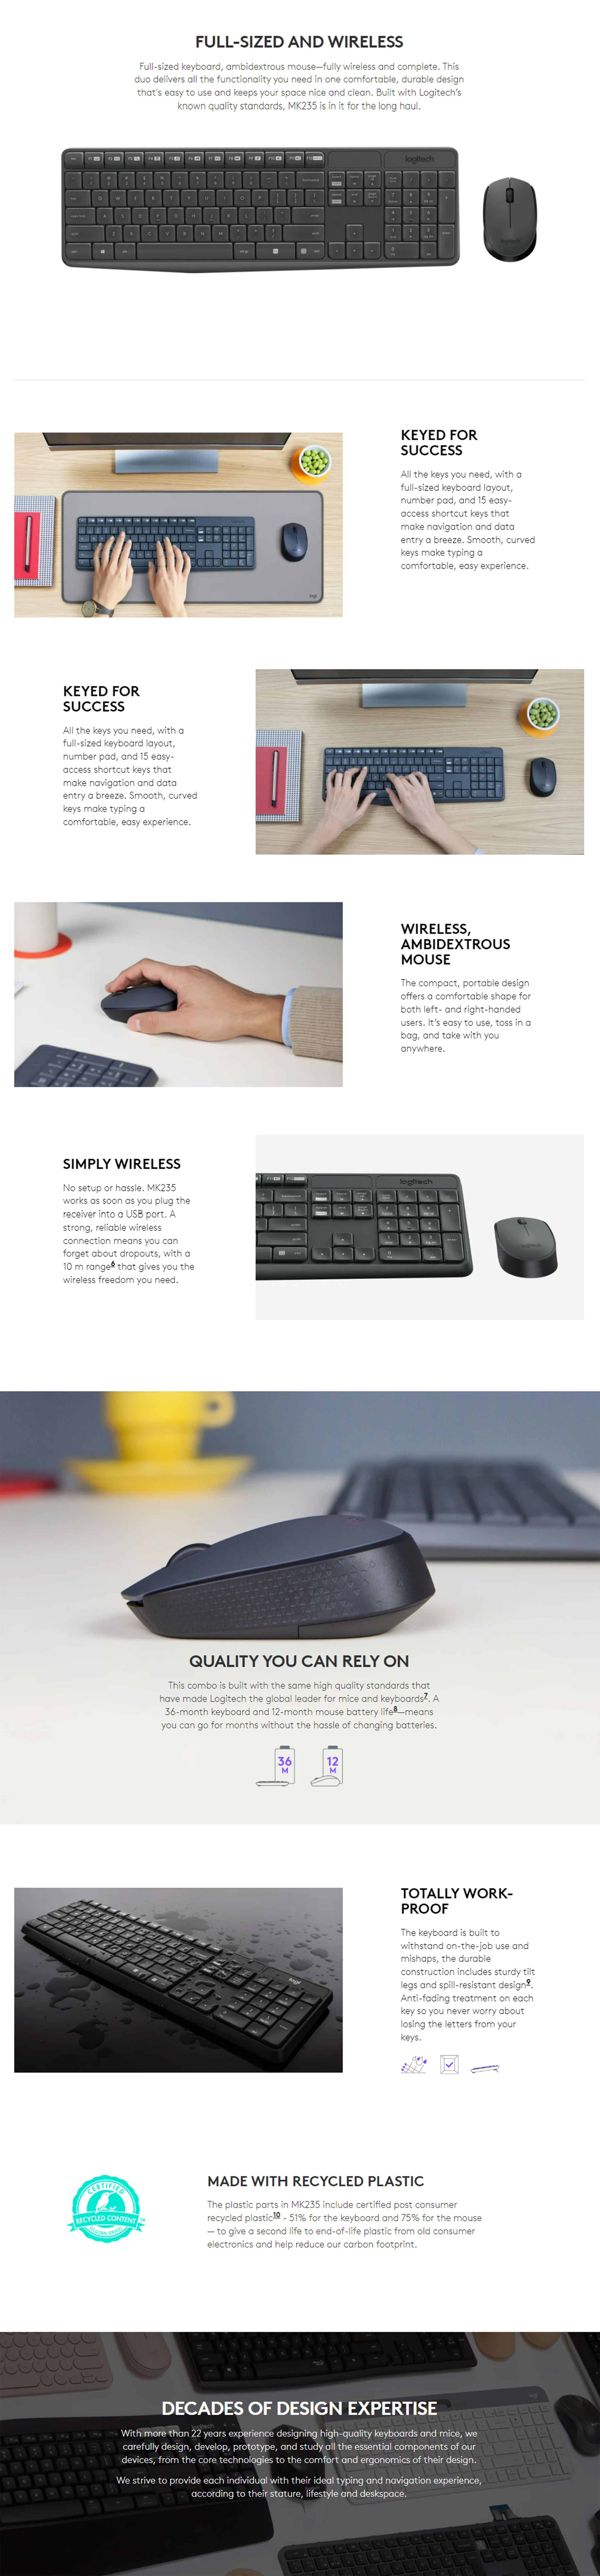 Keyboards-Logitech-MK235-Wireless-Combo-Keyboard-Mouse-4